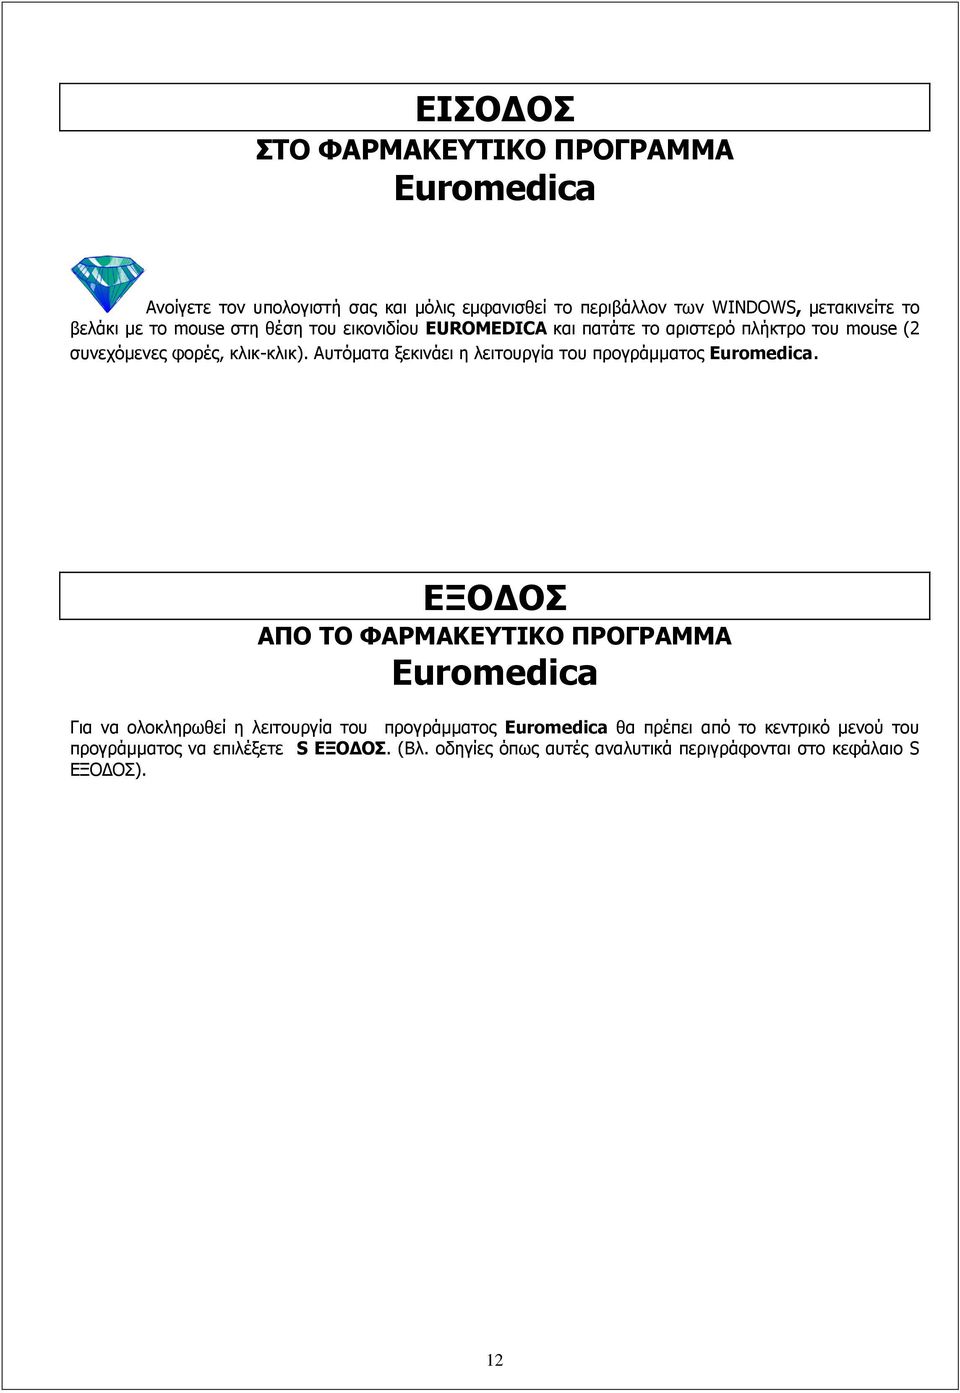 Αυτόματα ξεκινάει η λειτουργία του προγράμματος Euromedica.